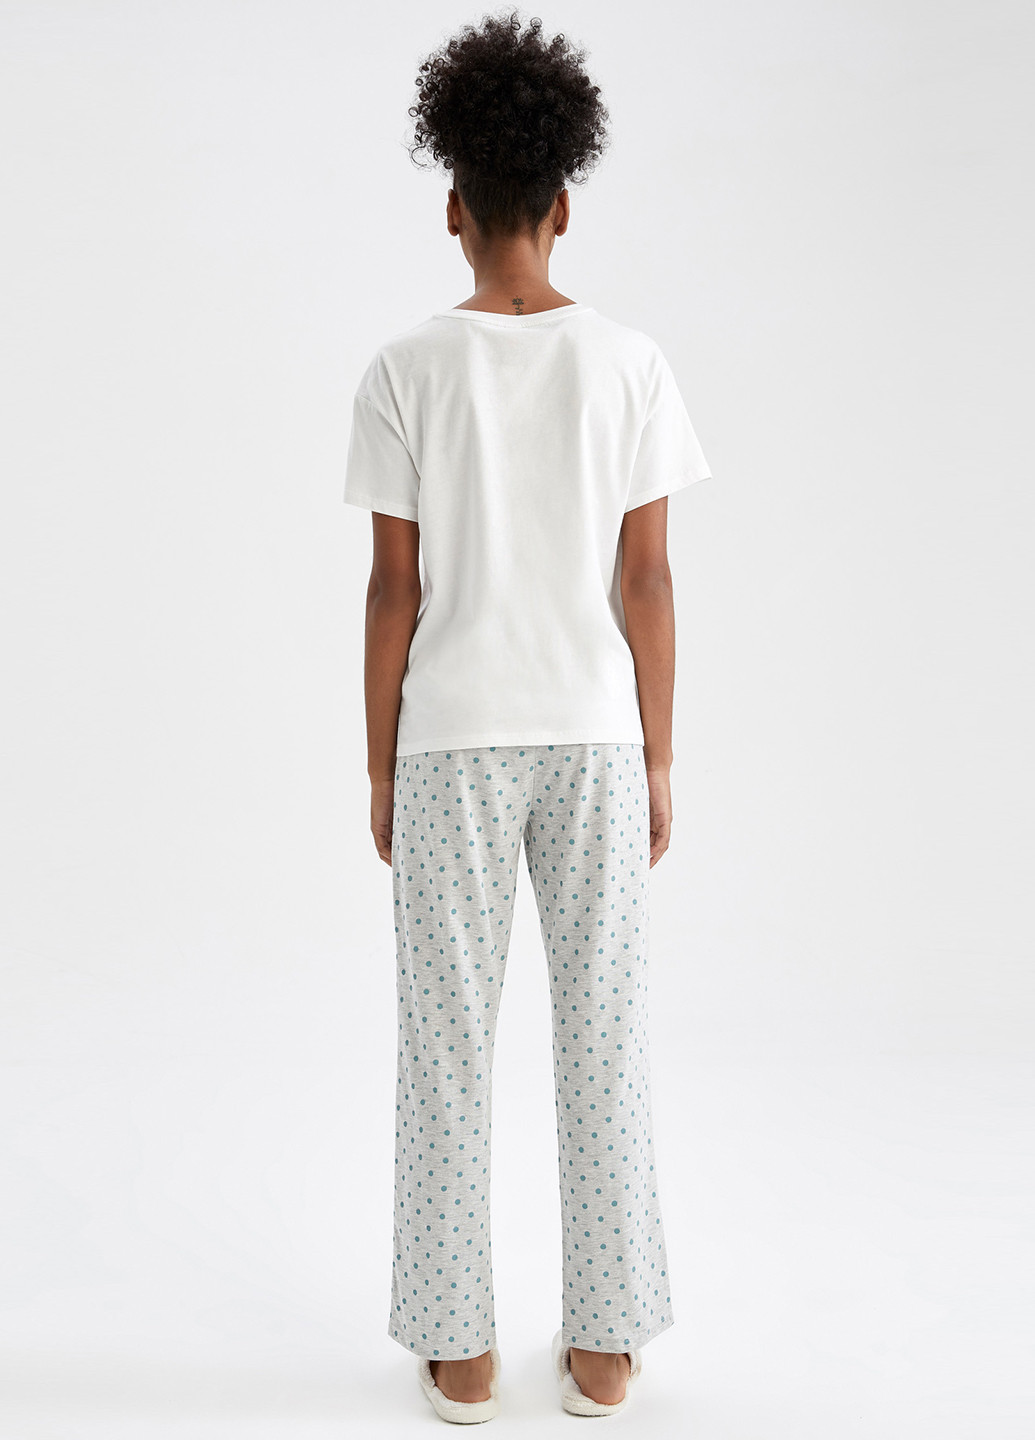 Белая всесезон пижама (футболка, брюки) футболка + брюки DeFacto